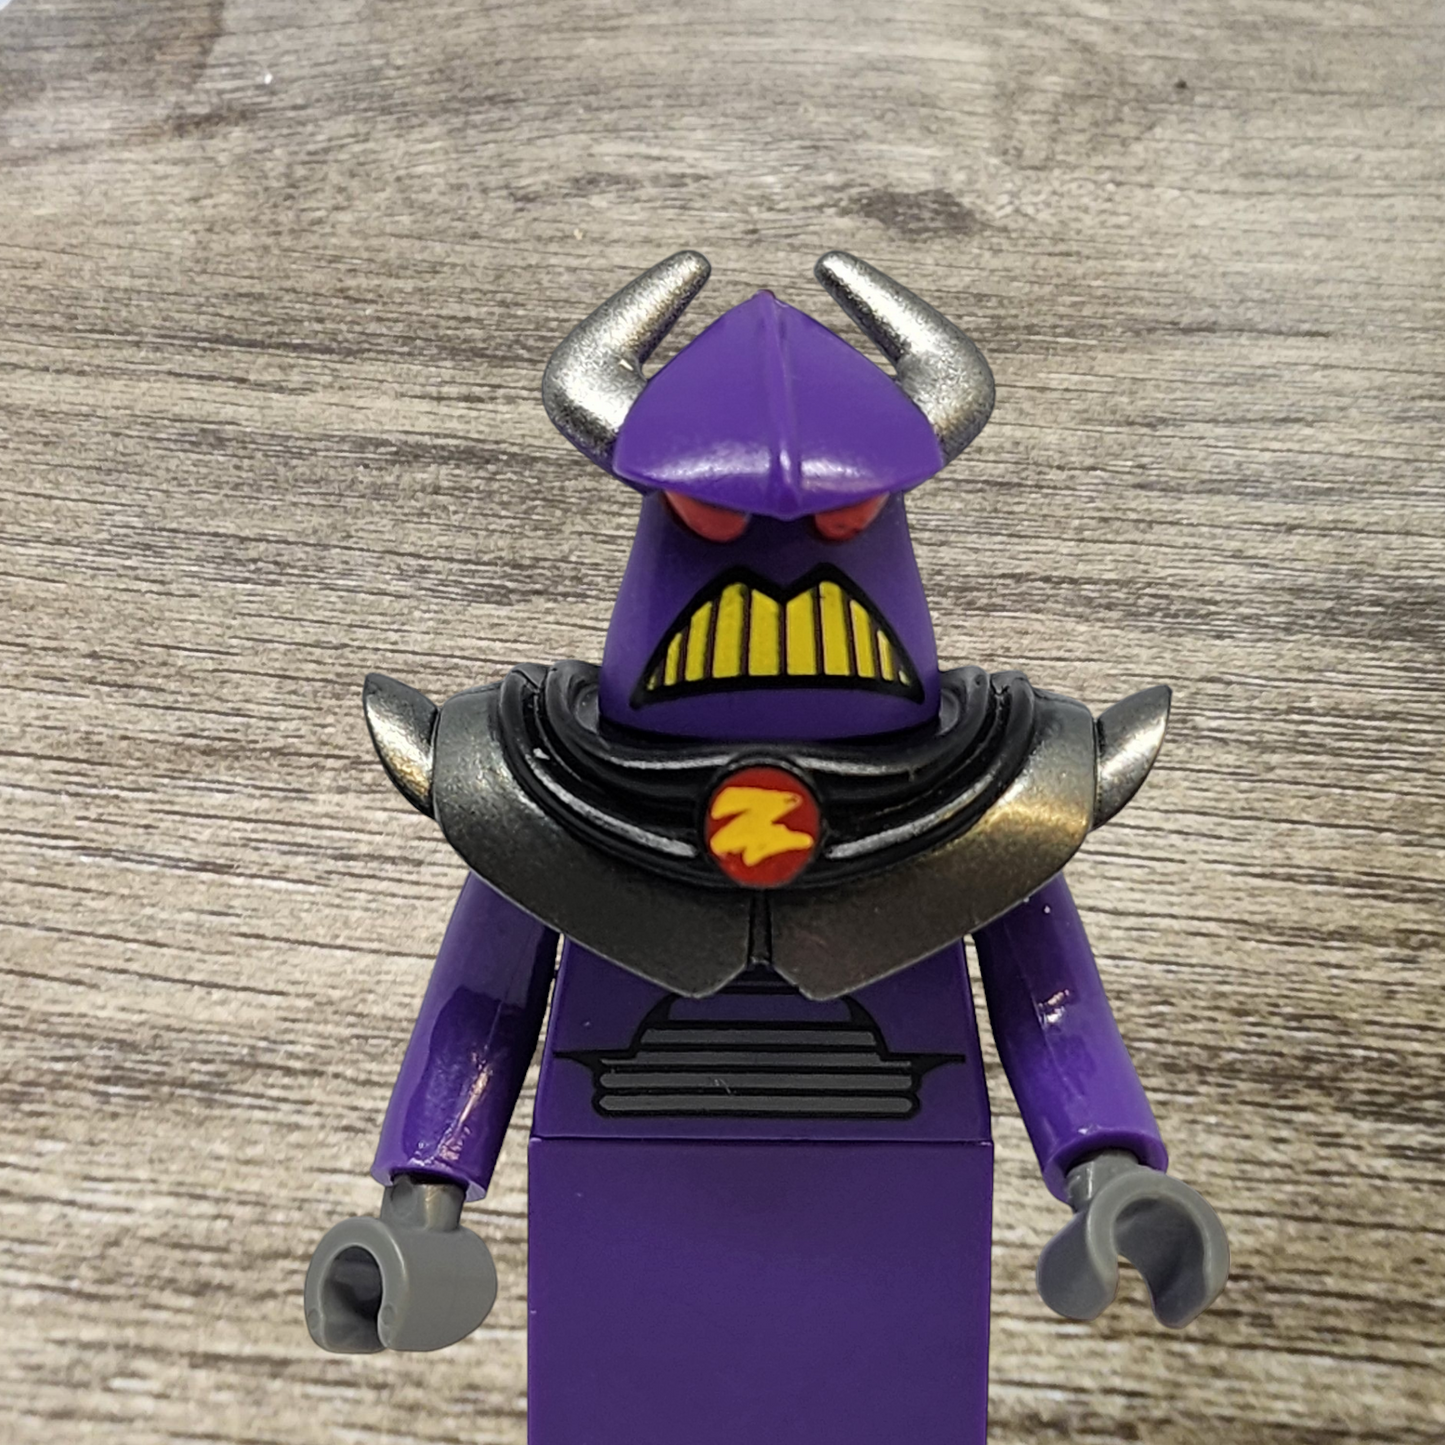 Lego Zurg Minifigure toy005 Toy Story Buzz Lightyear No Cape